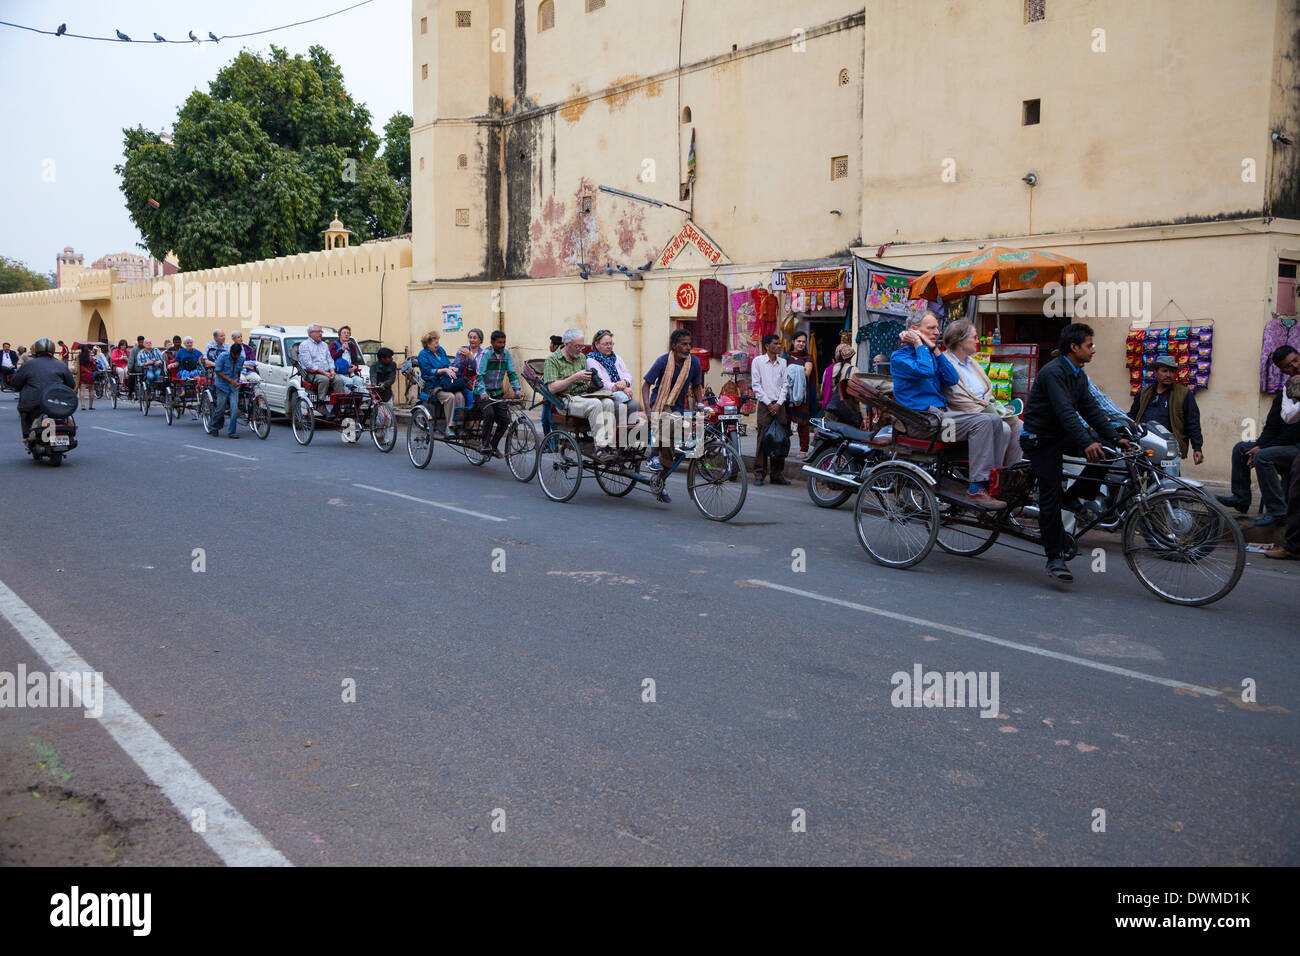 Jaipur, Rajasthan, India. Tourist Caravan of Three-wheeled Bicycle Rickshaws. Stock Photo